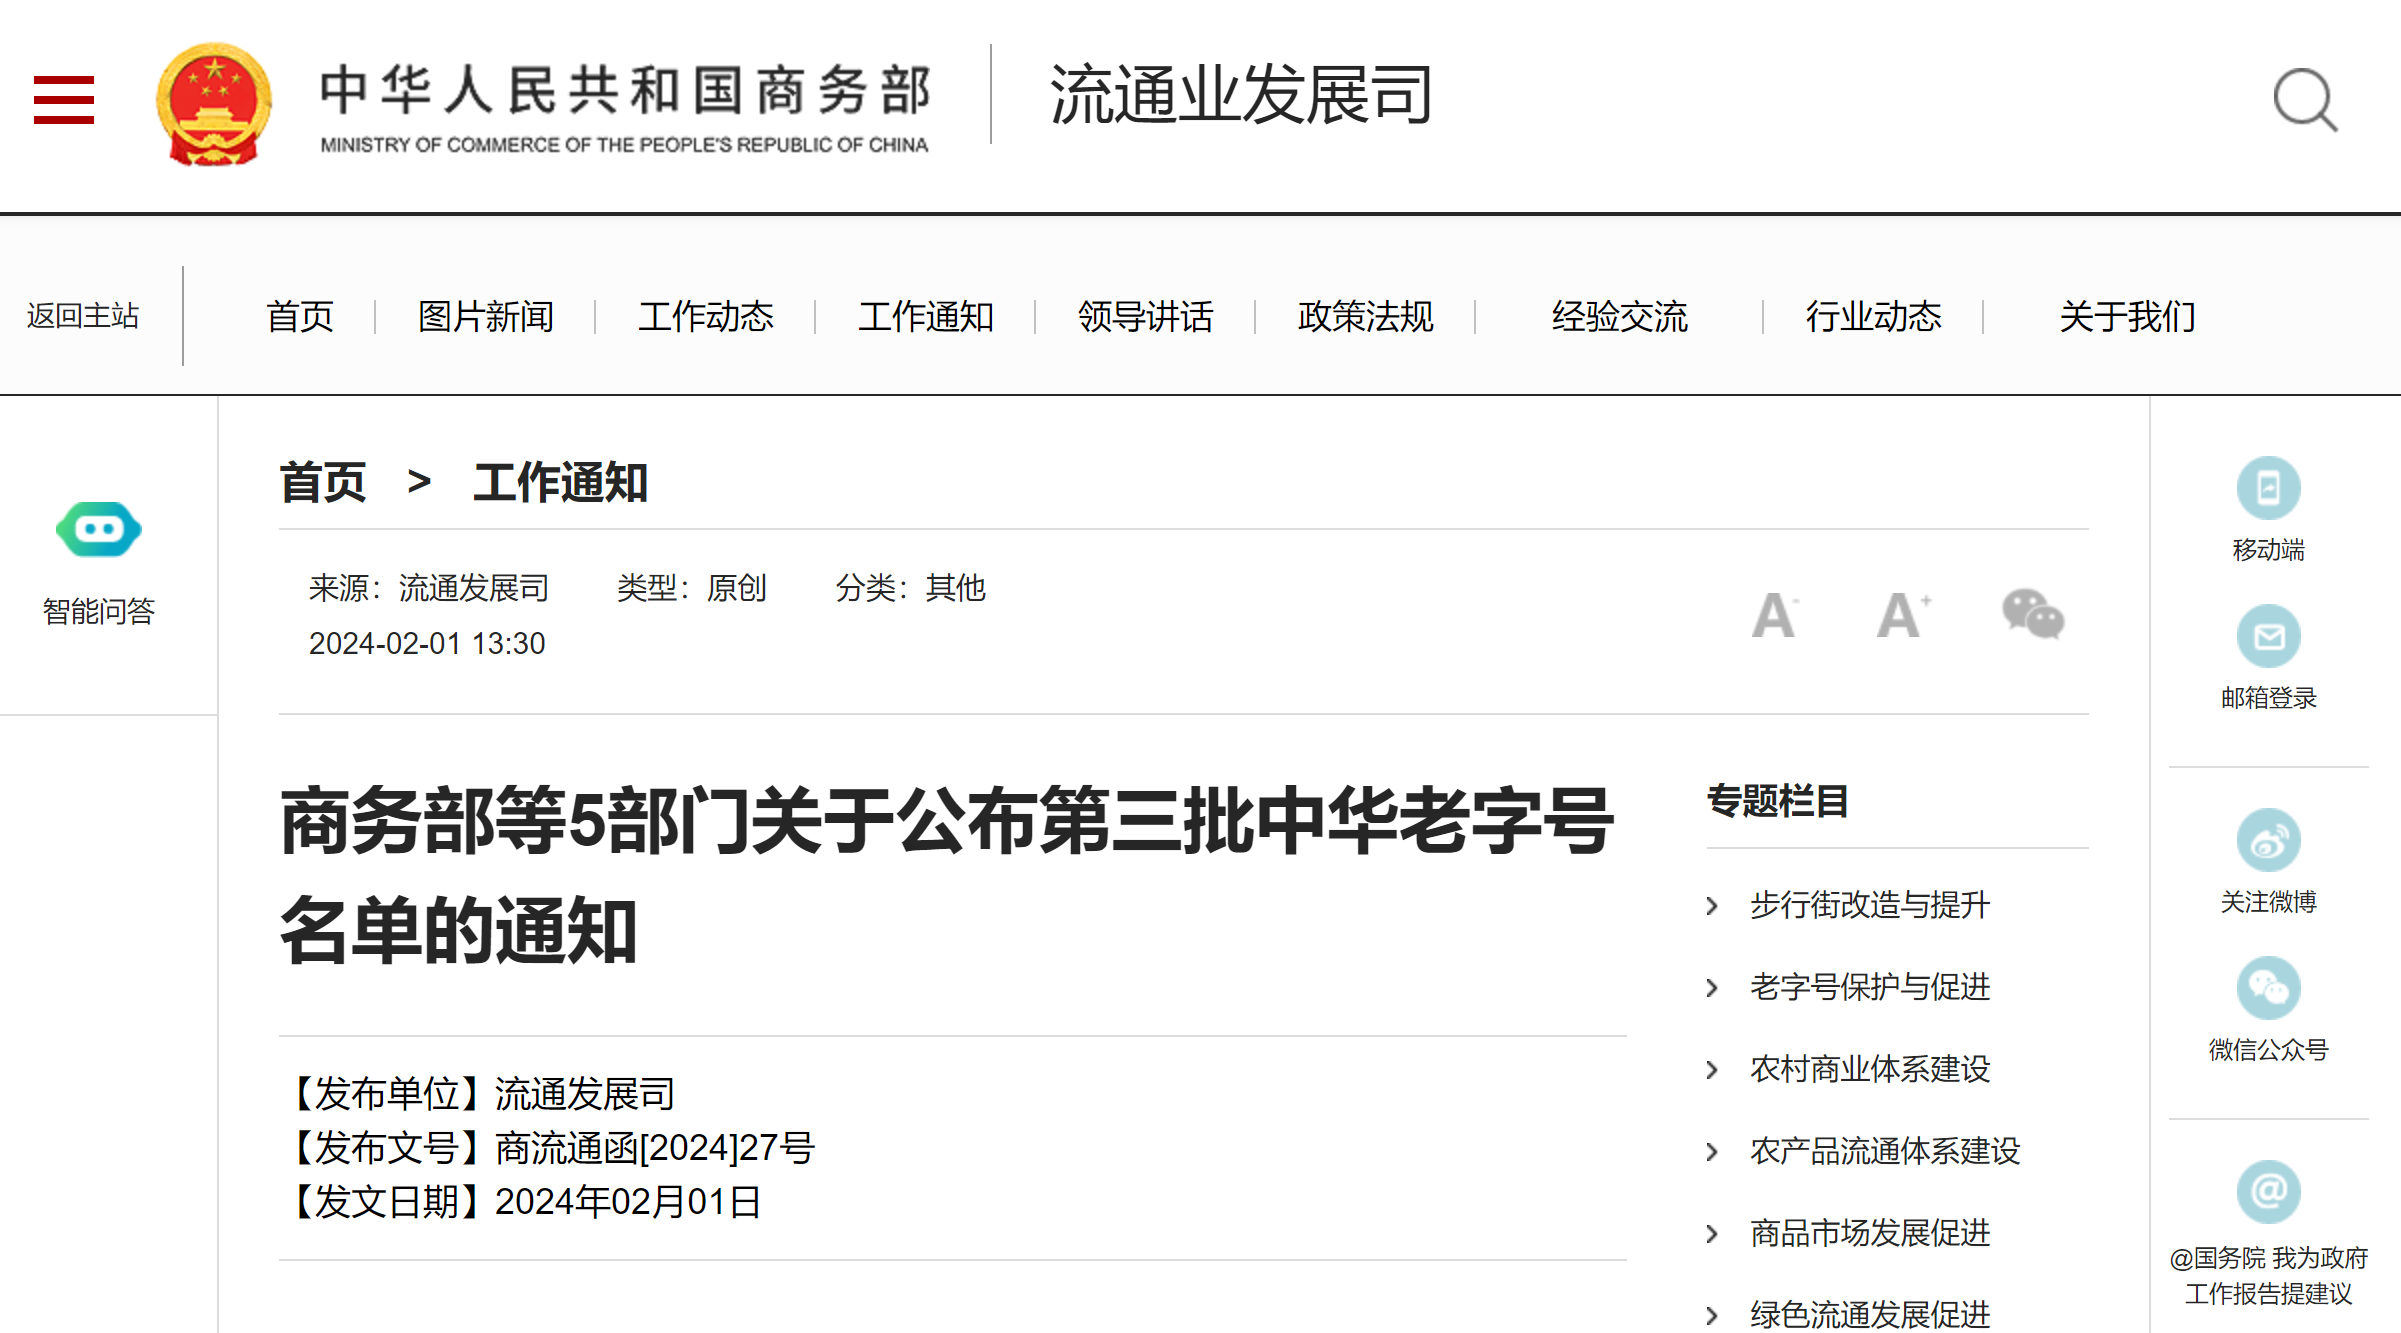 国家商务部网站发布《商务部等5部门关于公布第三批中华老字号名单的通知》 .